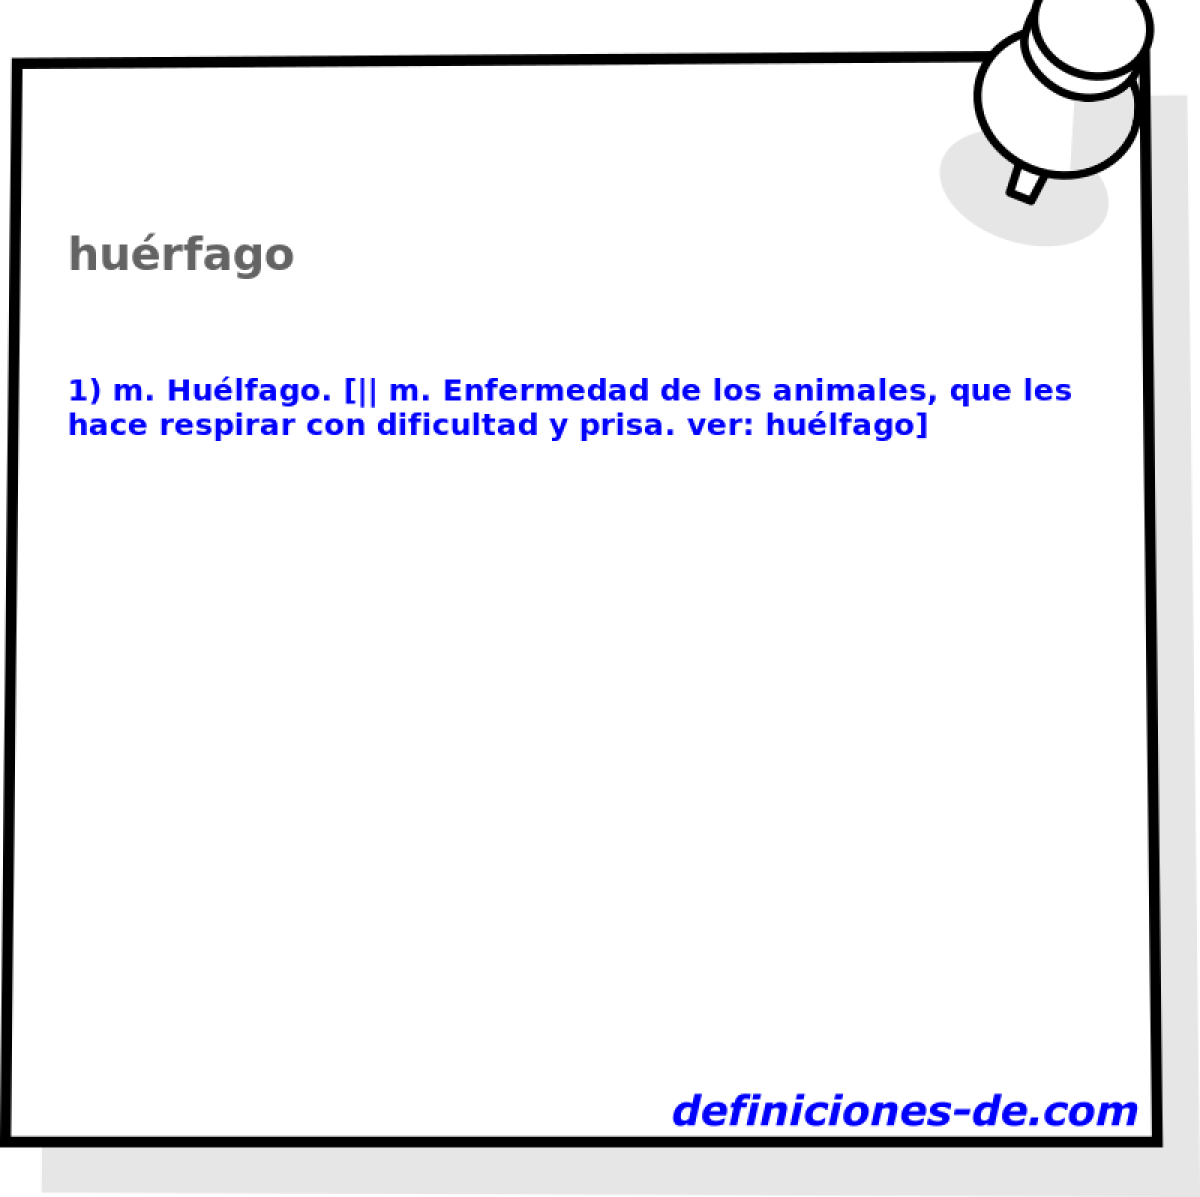 hurfago 